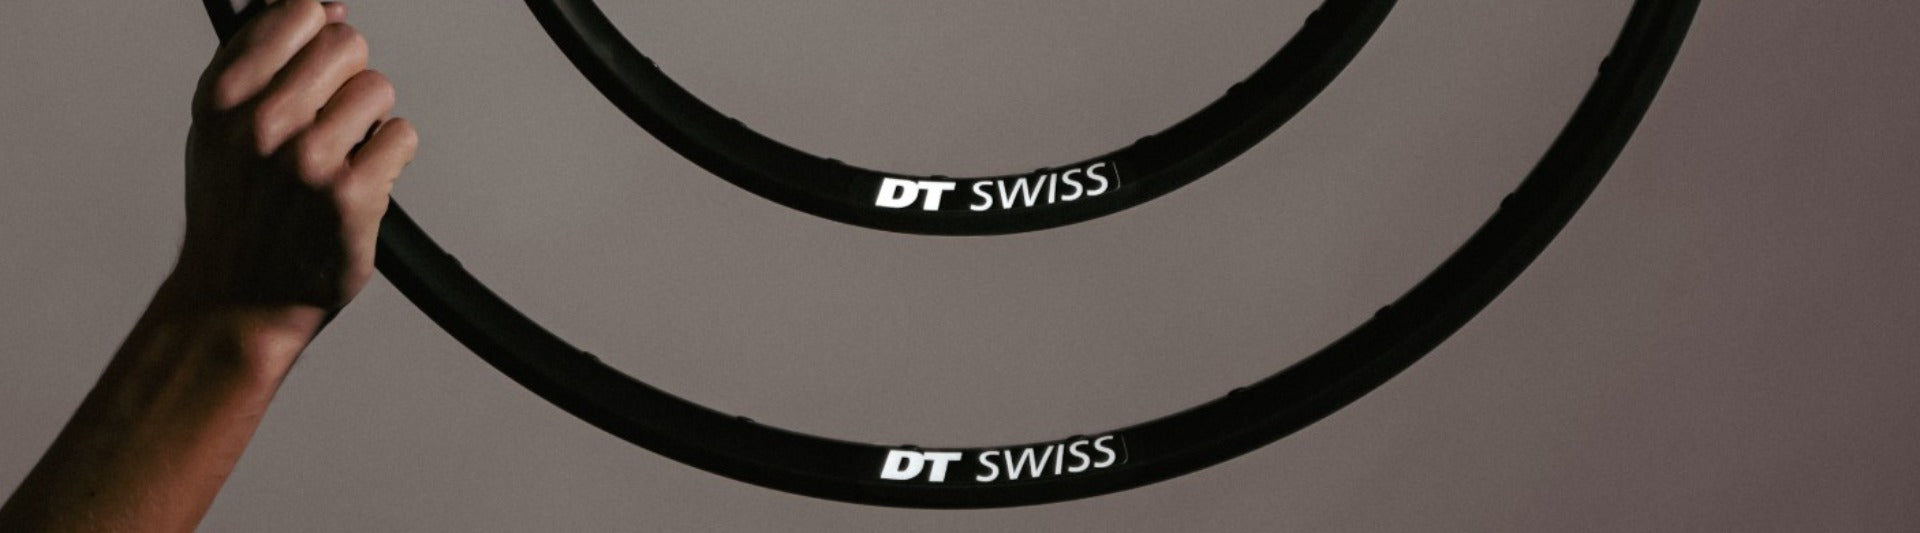 Deux cerclages de roues de vélo DT Swiss